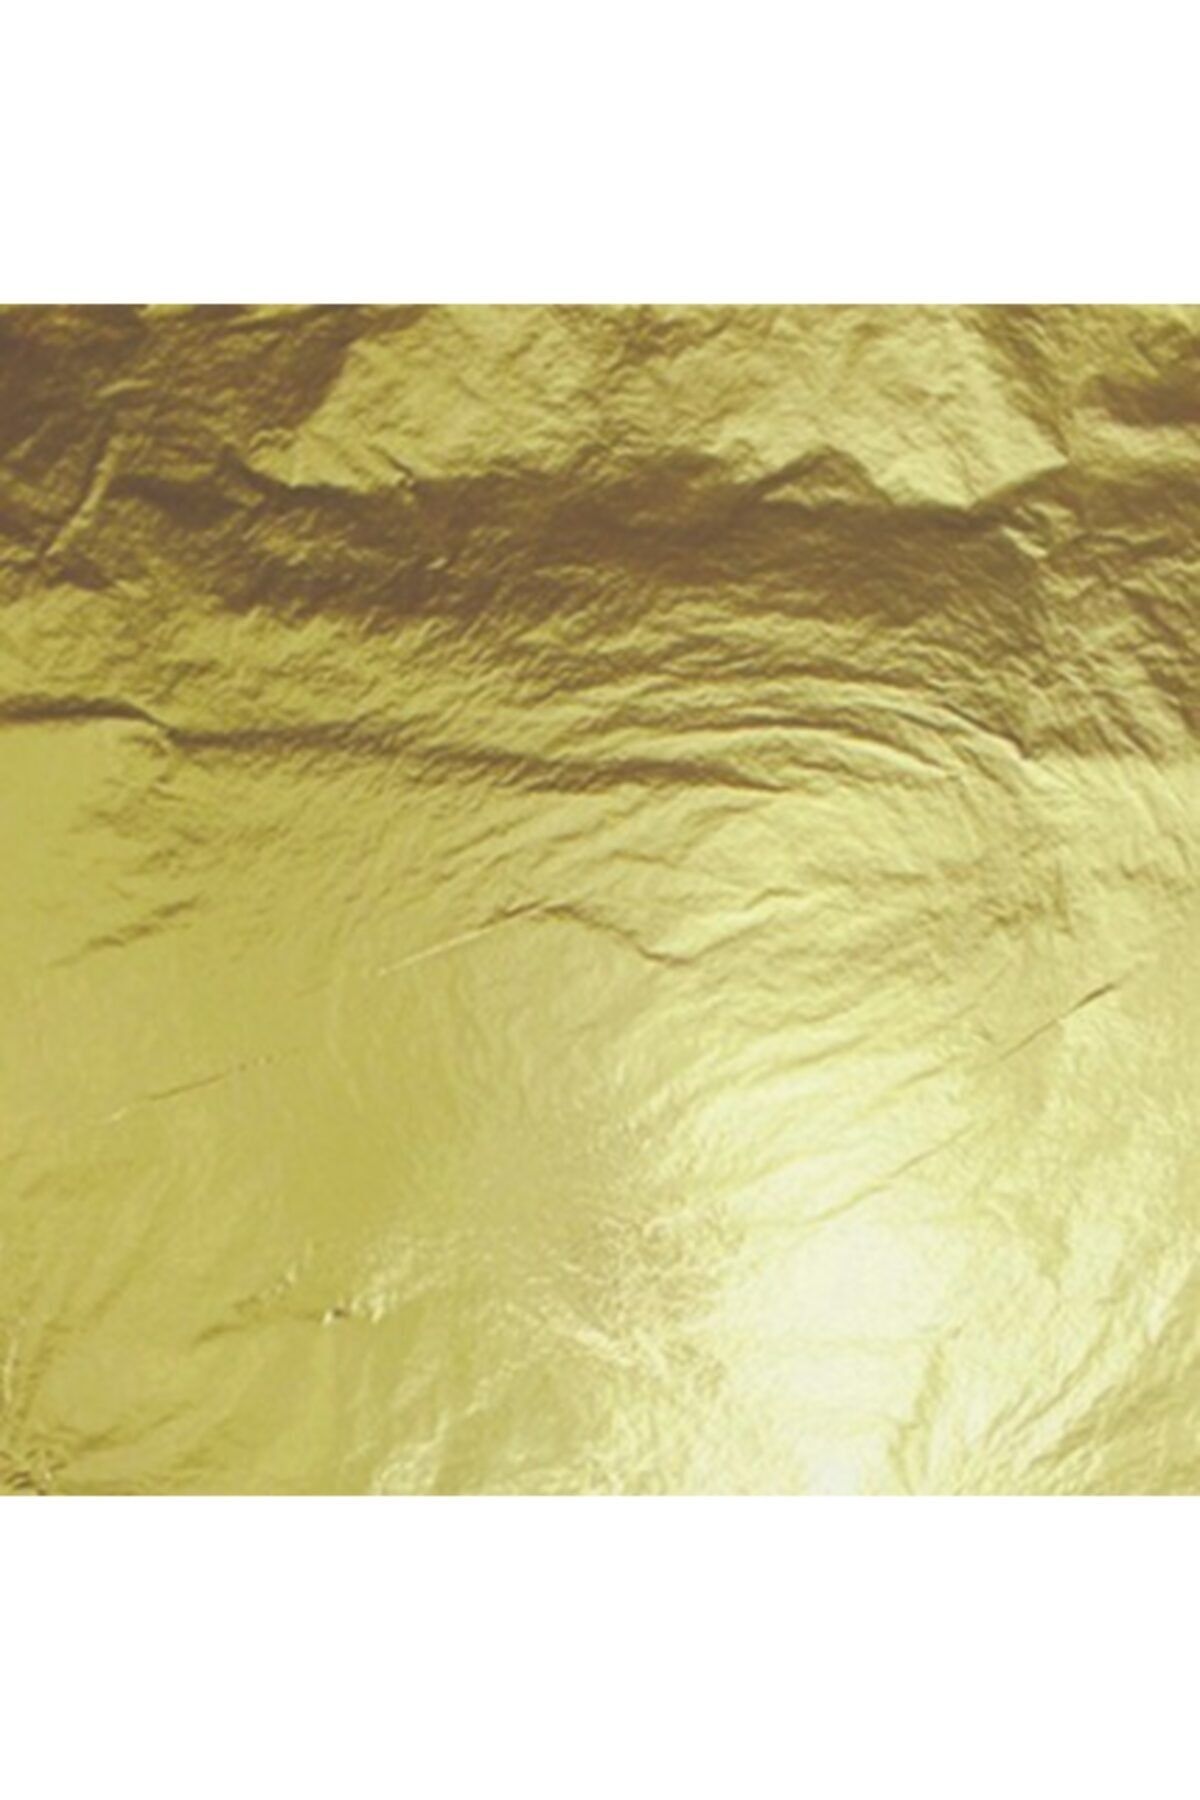 Epoksimax Altın Rengi Yaprak Varak 16cmx16cm - 100'lü Paket (epoksi - Hobi Uygulamaları)